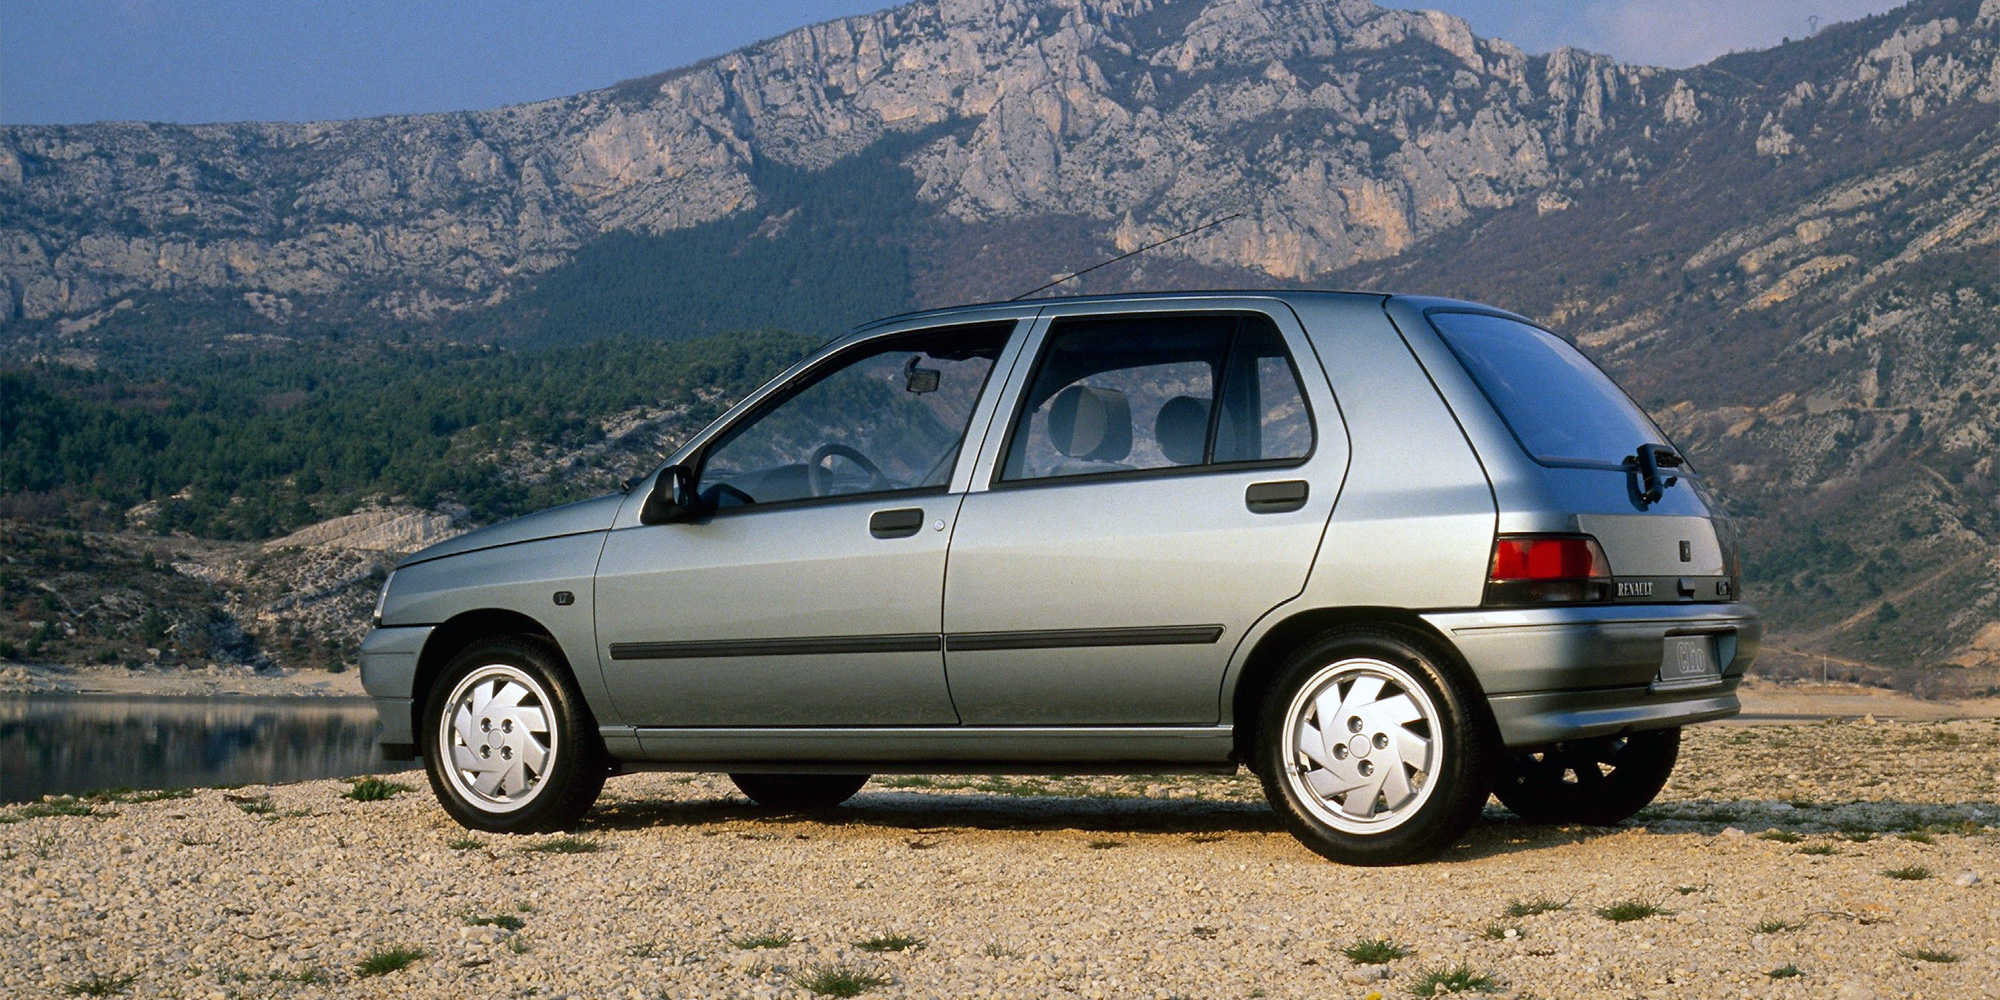 Historie Renault Clio: eine Erfolgsgeschichte seit über 30 Jahren